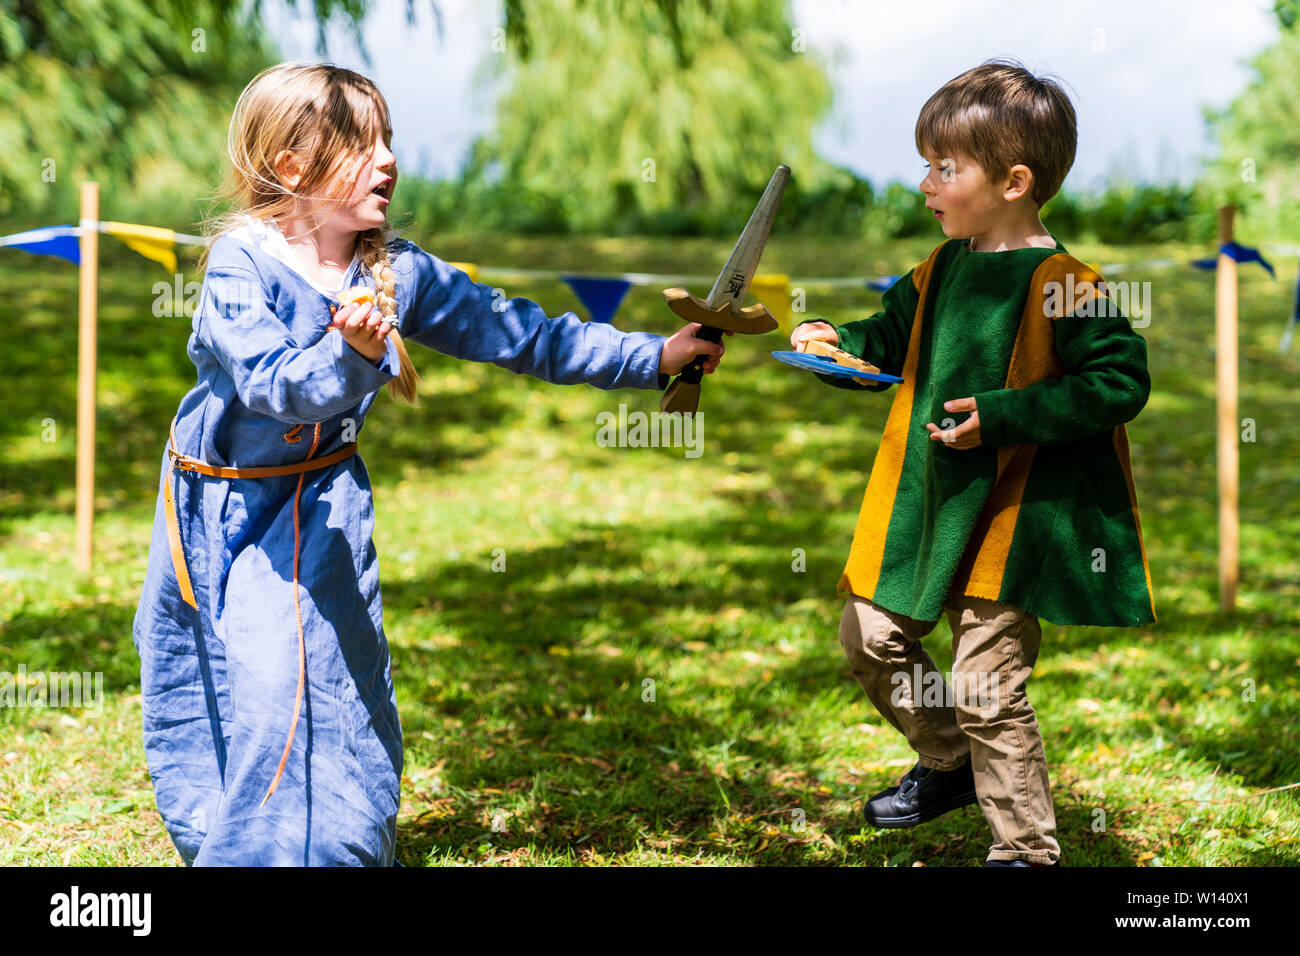 Deux enfants, garçon, 4-5 ans, et une fille, 5-6 ans, vêtu de vêtements médiévaux et les combats de manière ludique à l'épée et hache sur l'herbe. Banque D'Images